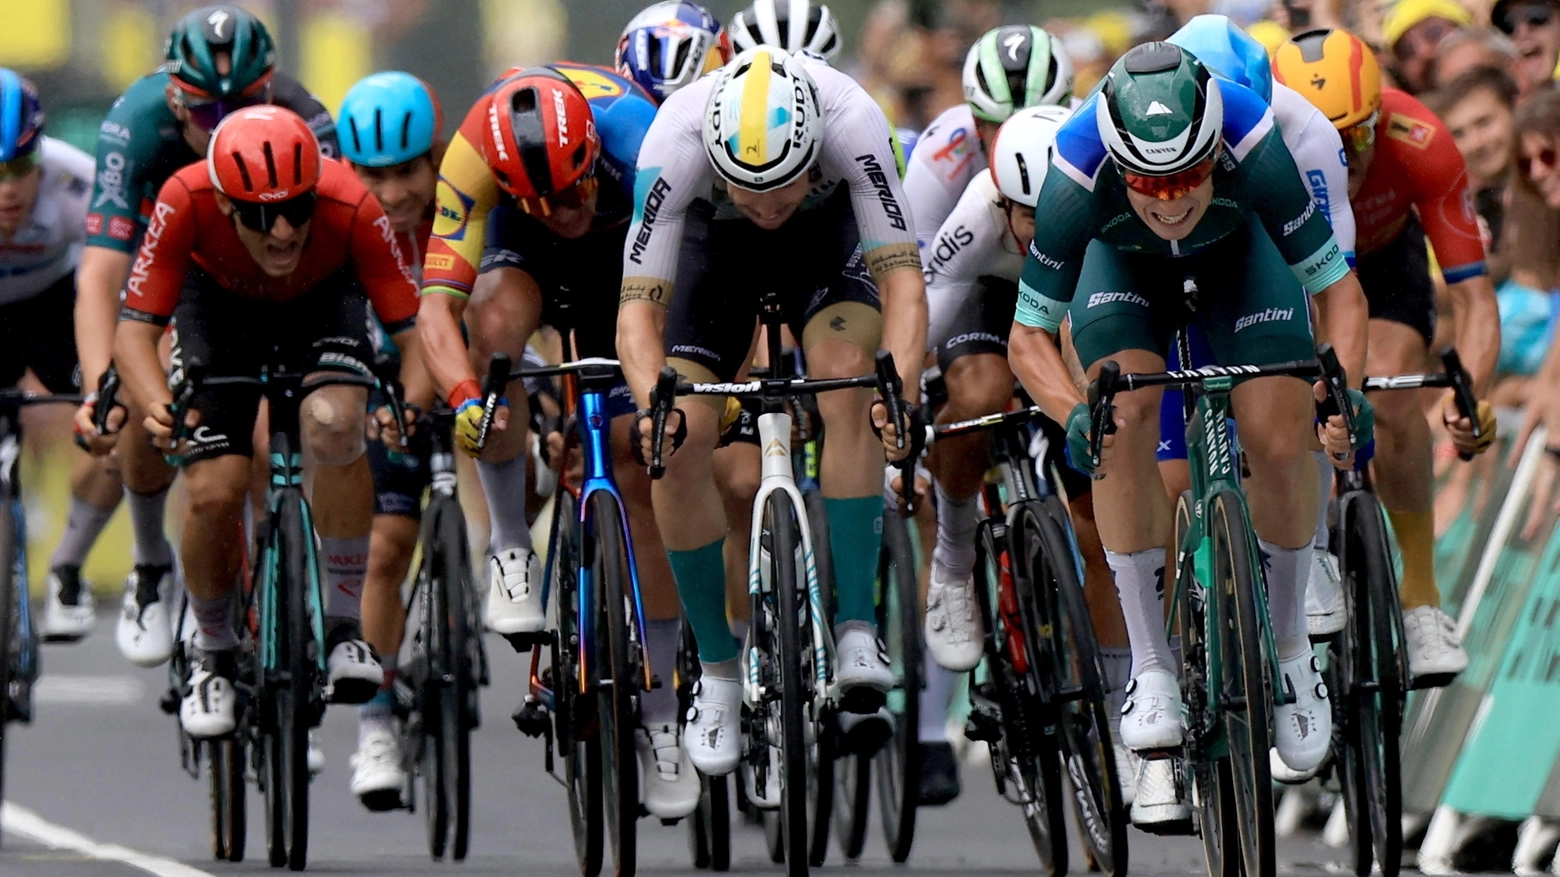 Il Tour de France è una delle competizioni sportive più importanti al mondo, la più seguita dopo le Olimpiadi e il Mondiale di calcio